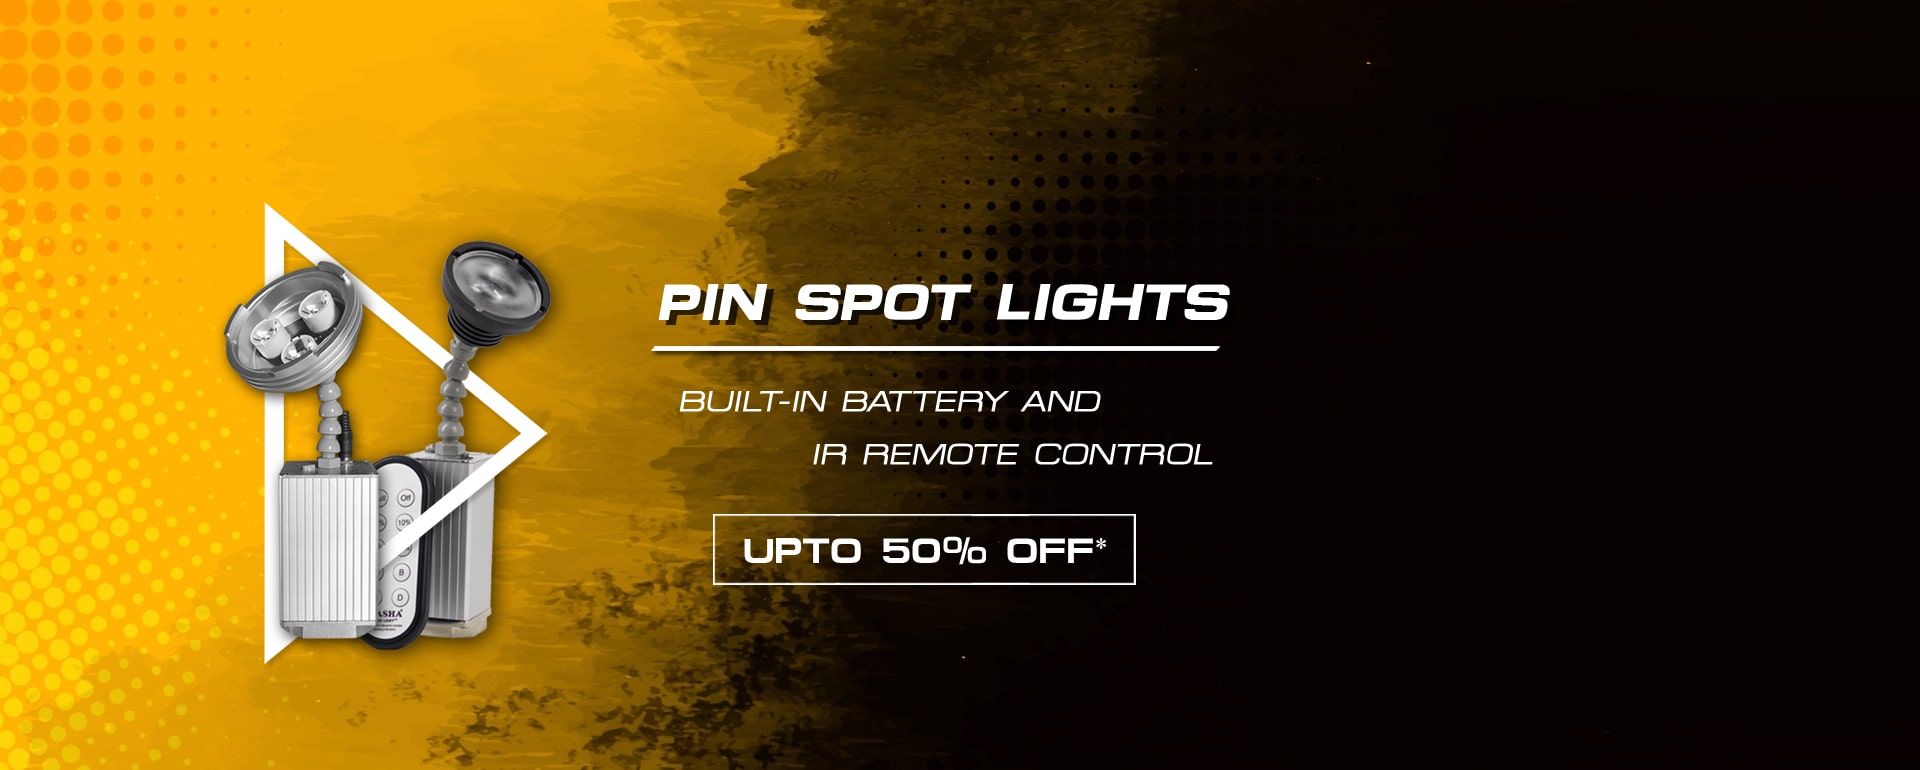 Pin Spot Lights